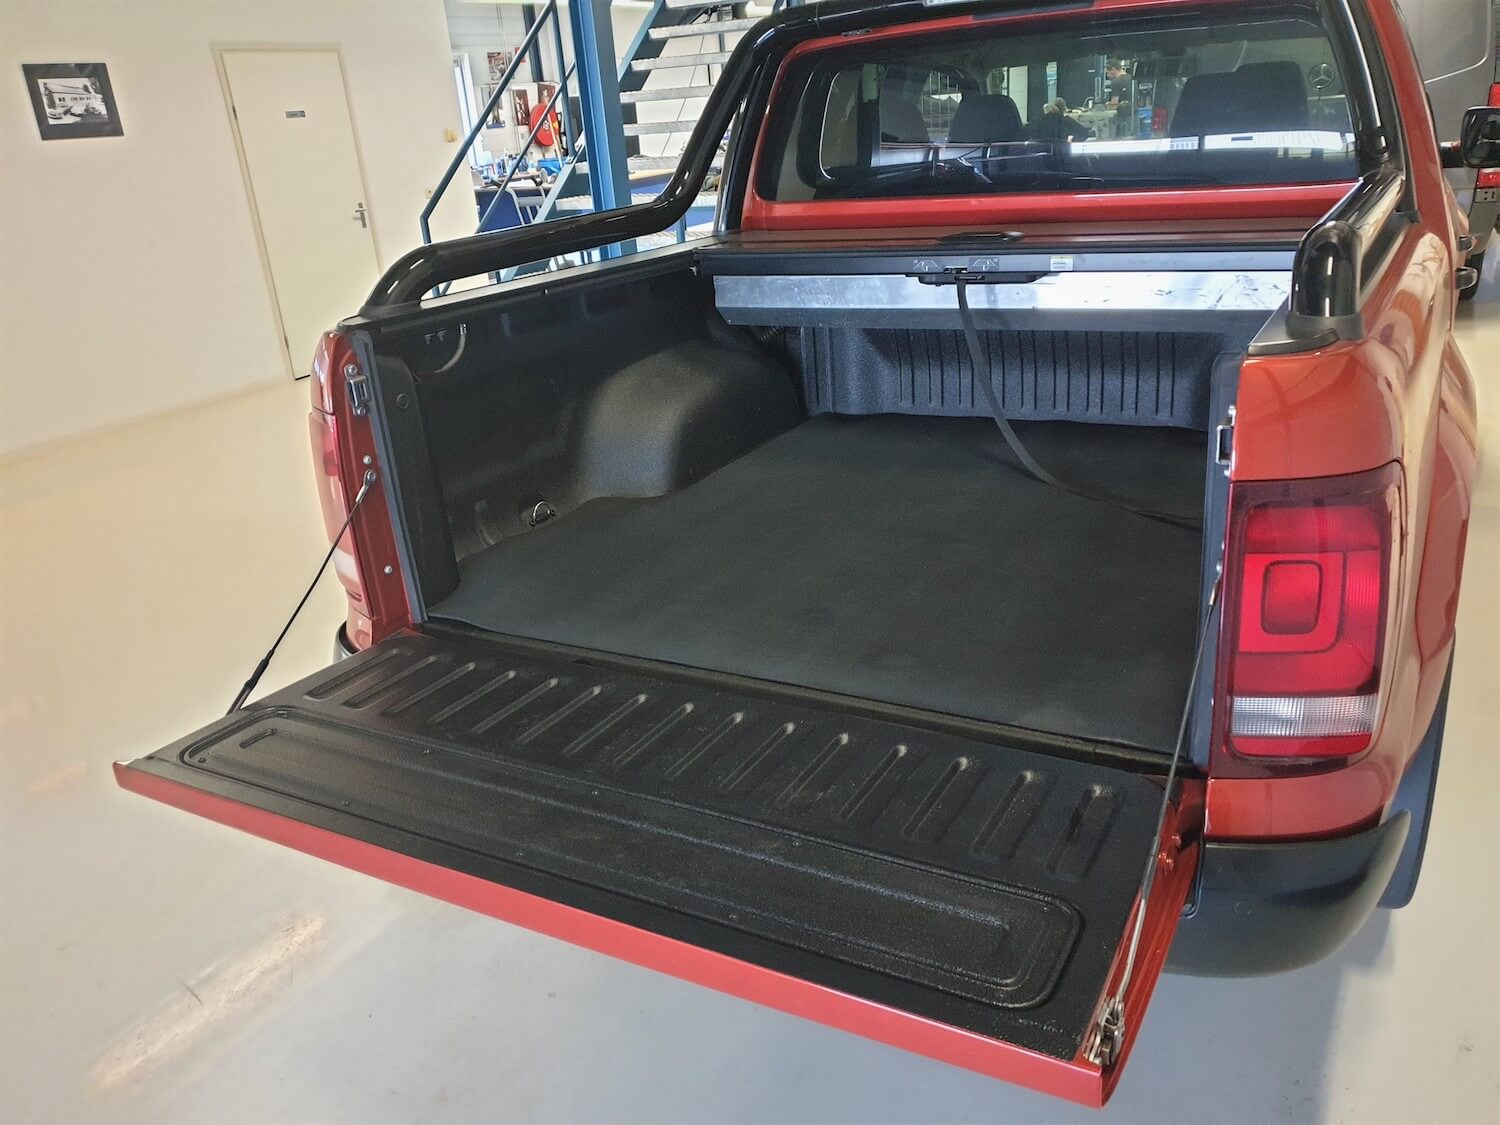 VW Amarok voorzien van rubbermat in laadruimte.